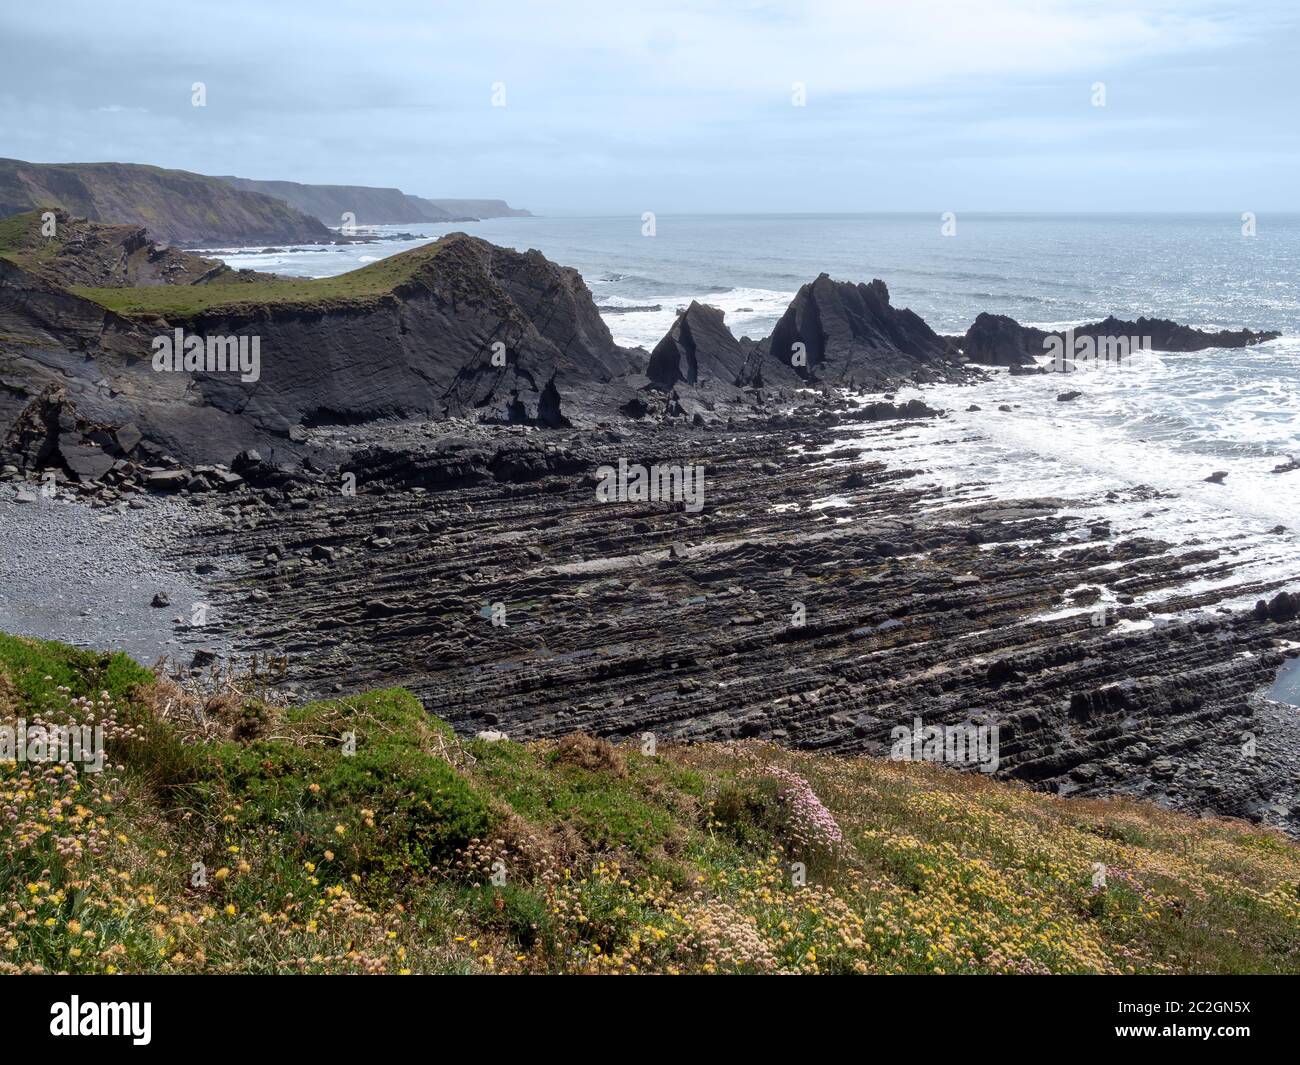 Le littoral spectaculaire et accidenté de Hartland Quay, au nord du Devon. Orienté sud. Banque D'Images